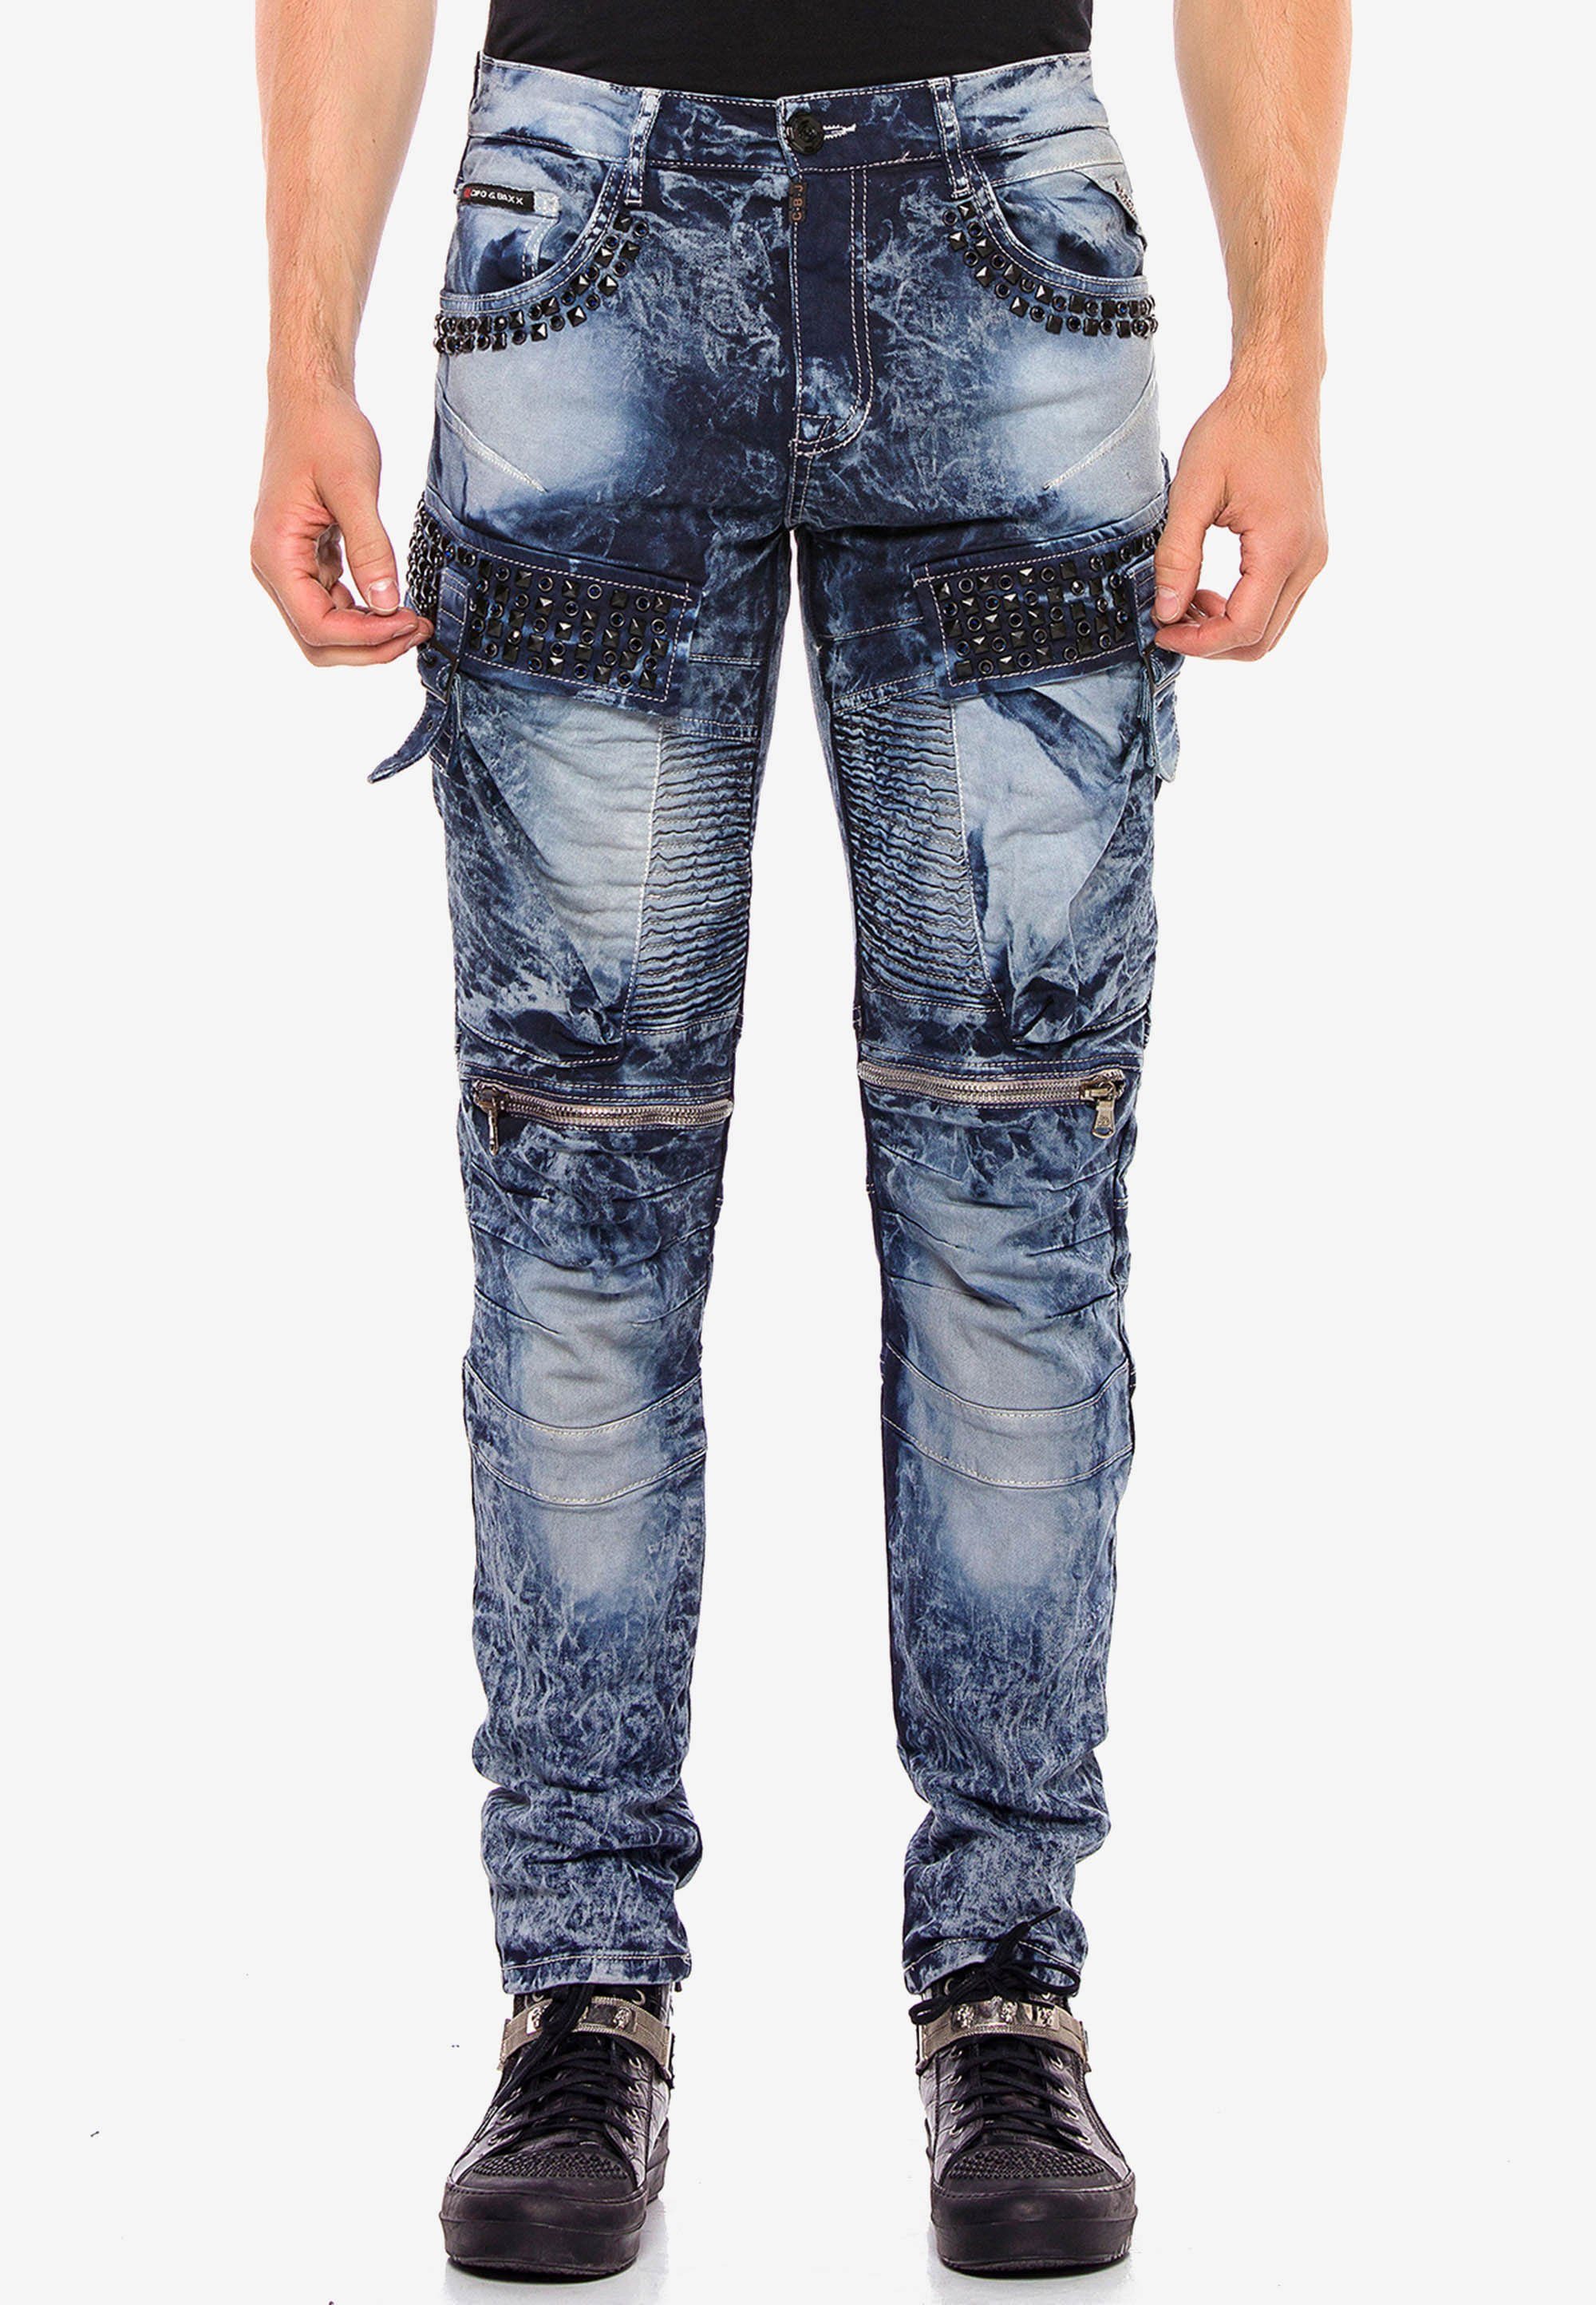 Fit Bequeme mit Edelstein Jeans & Taschen in Cipo Regular blau Baxx